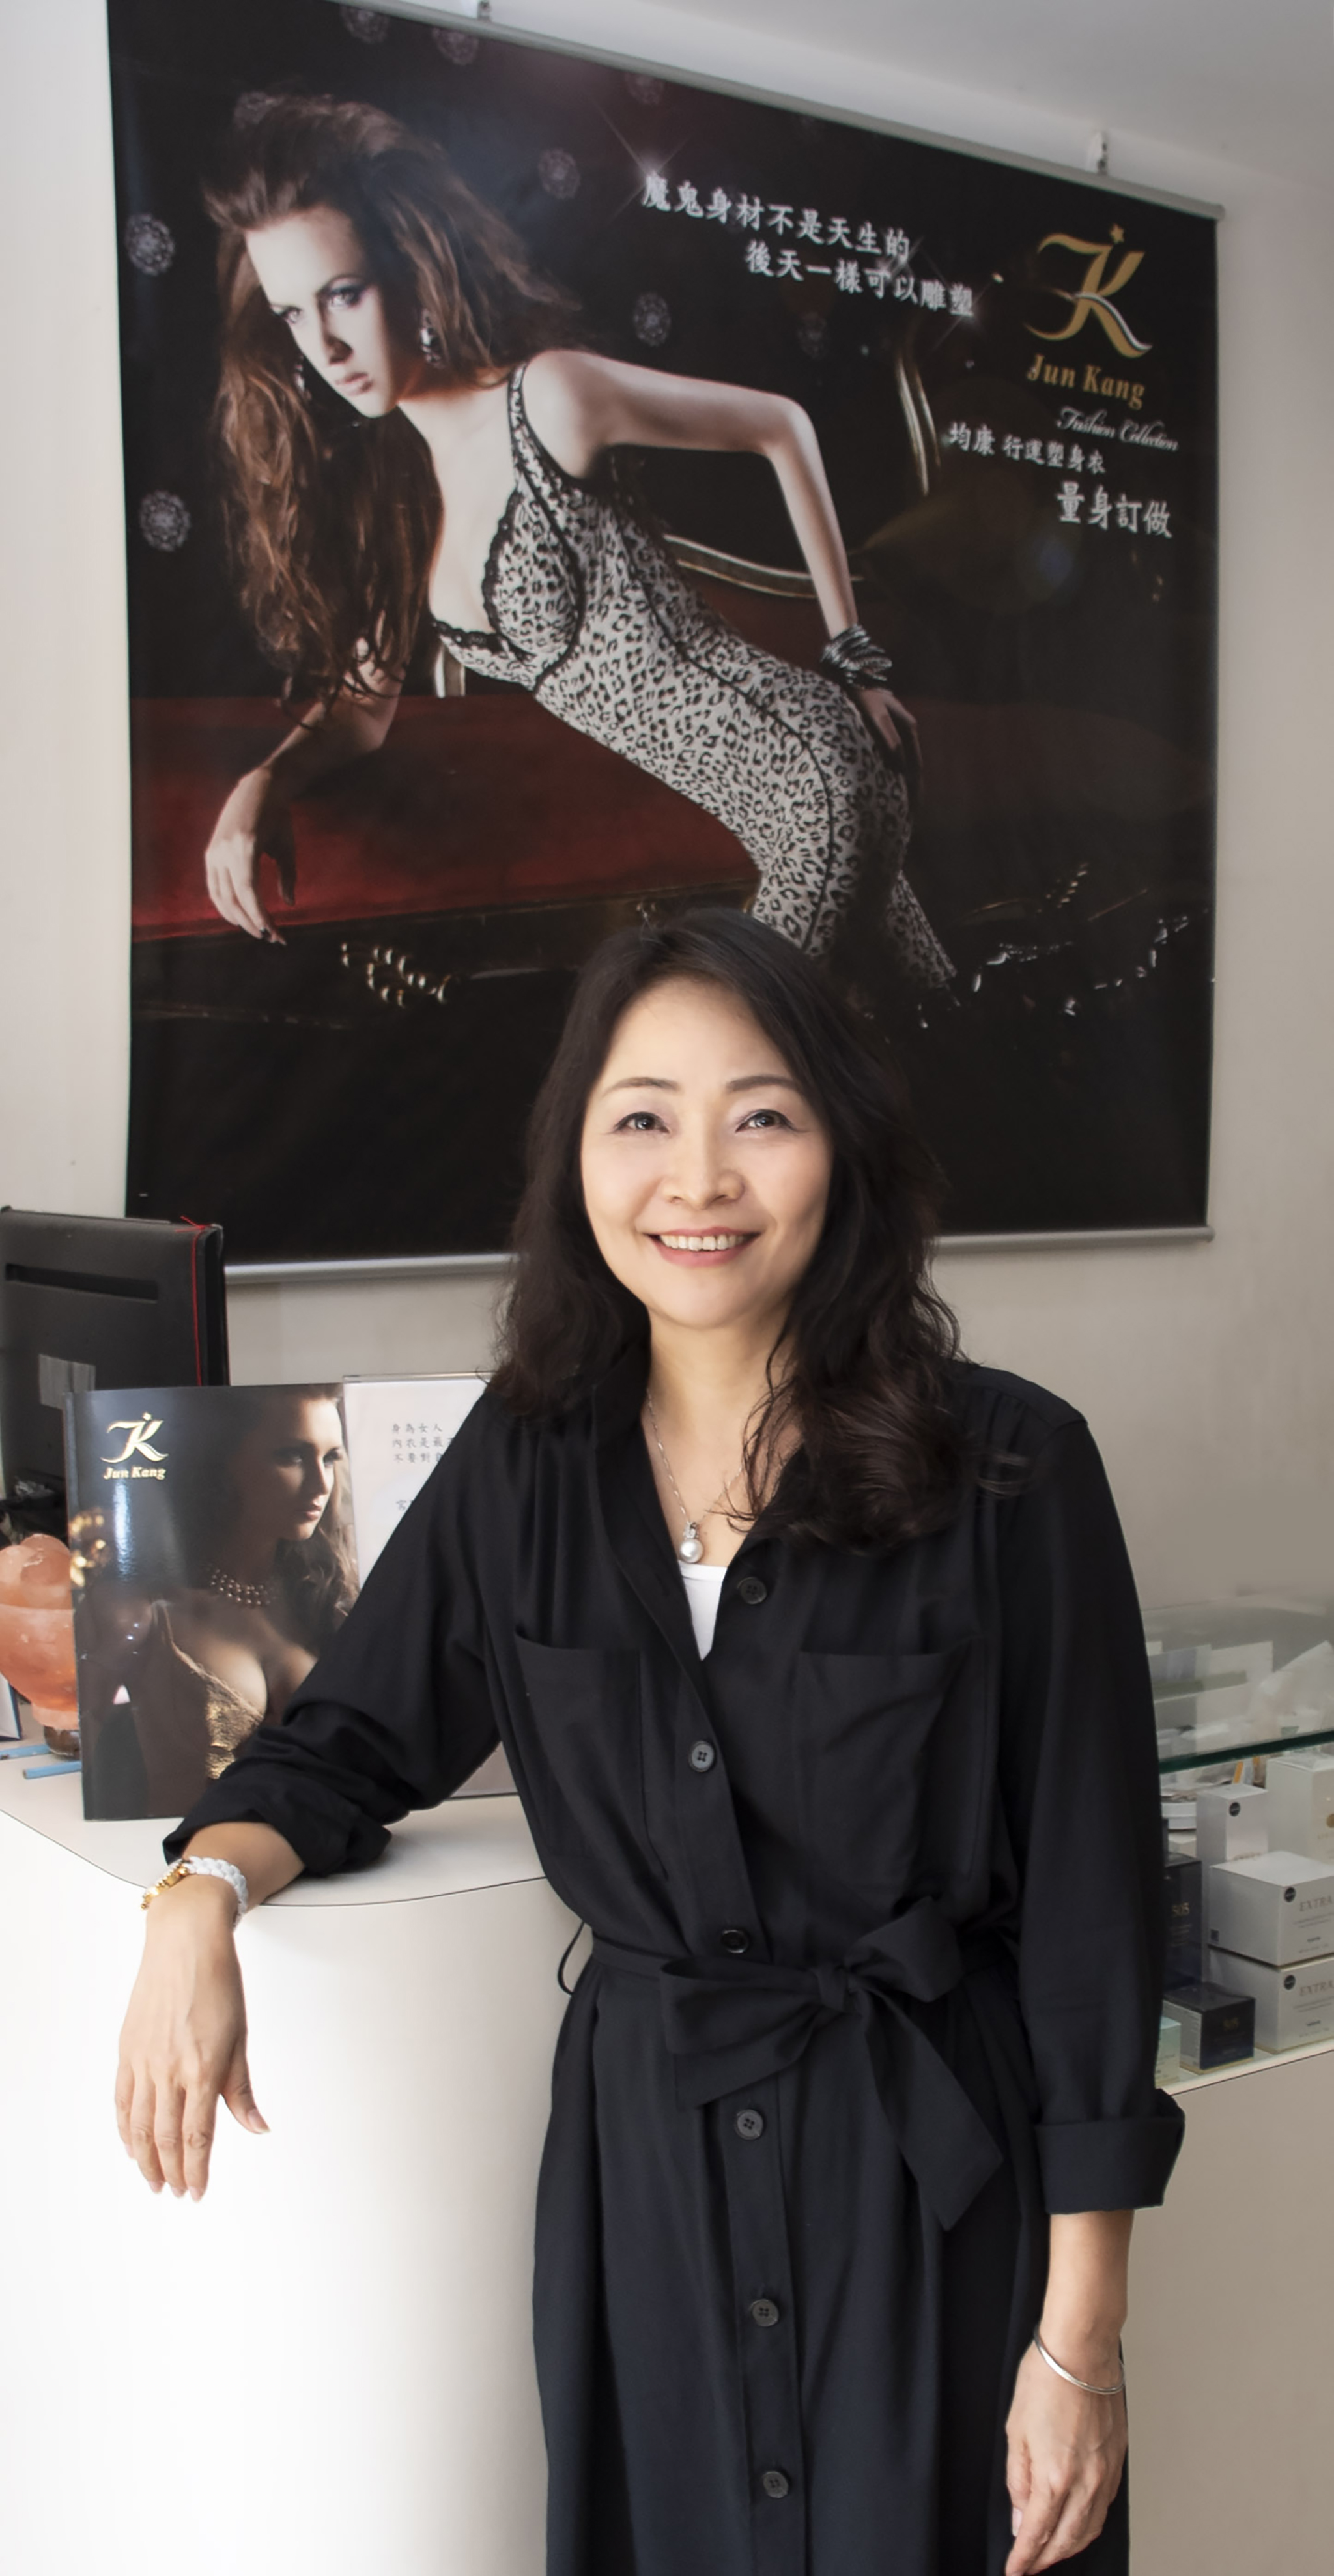 JK（Jun Kang均康）訂製健康塑身衣創辦人林芝芝小姐暢談創業心路歷程。